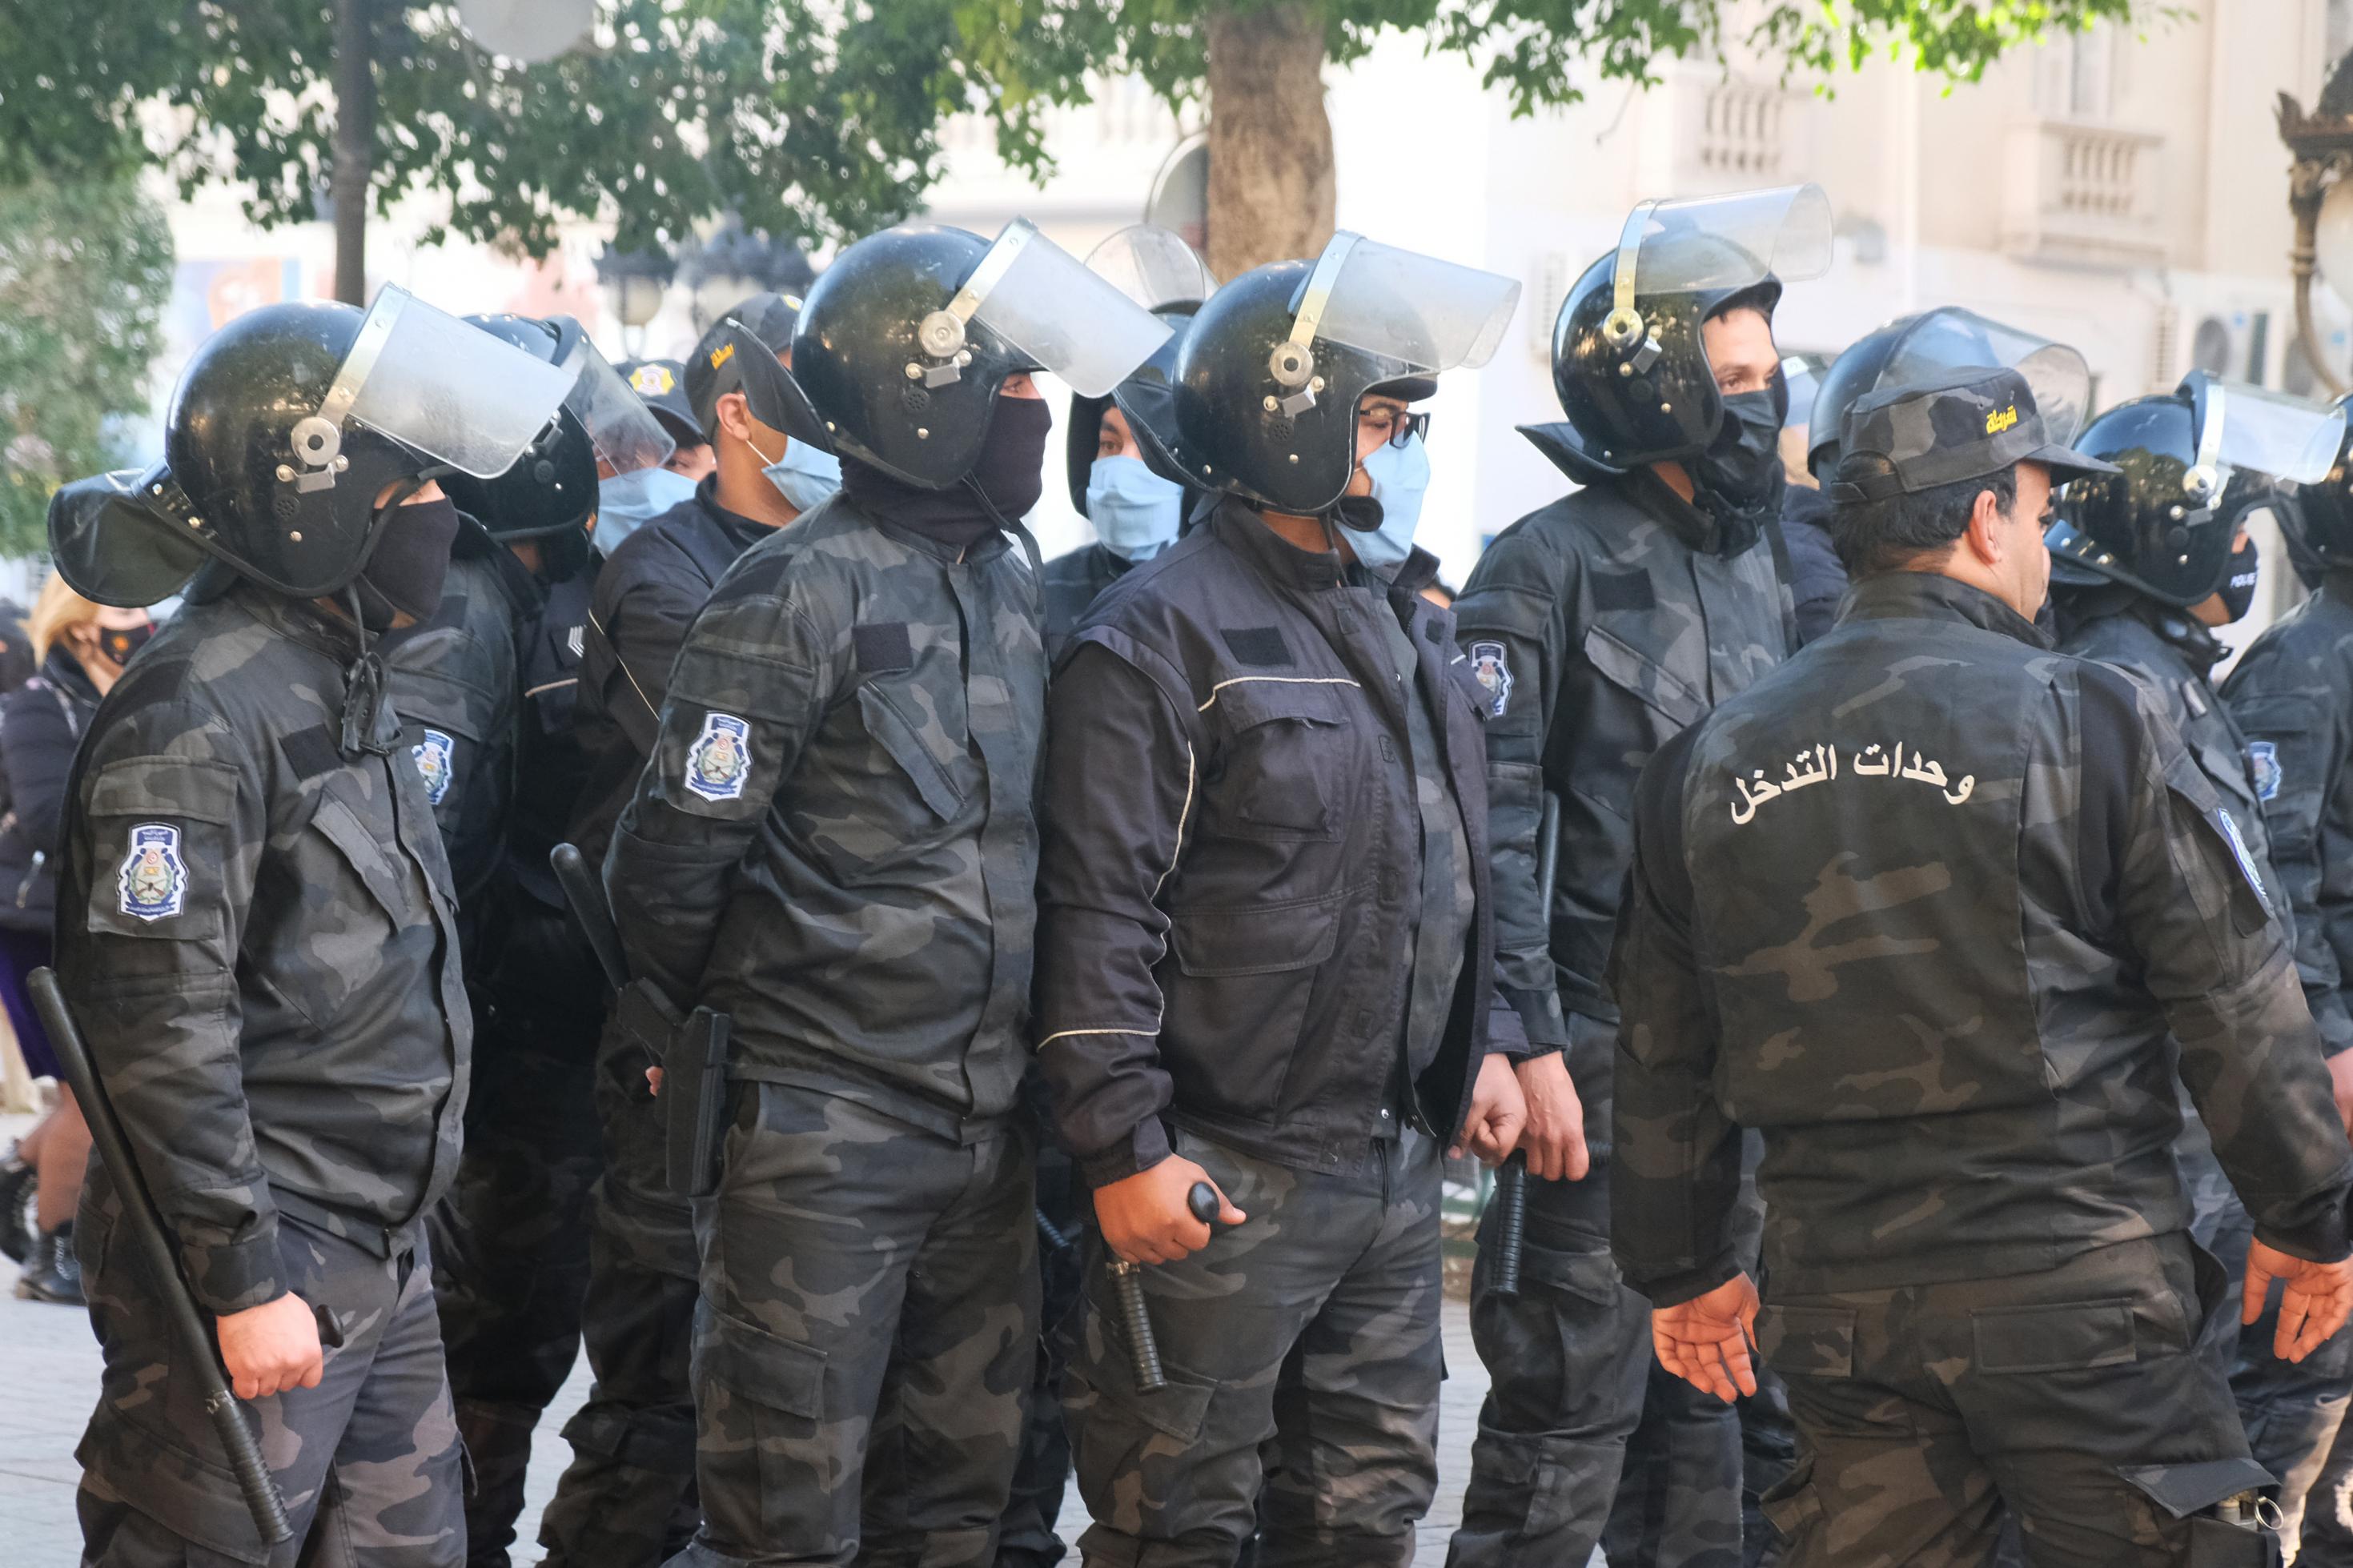 Reihe von Polizisten in schwarzer Uniformen mit Helmen, Schlagstöcken und Gesichtsmasken